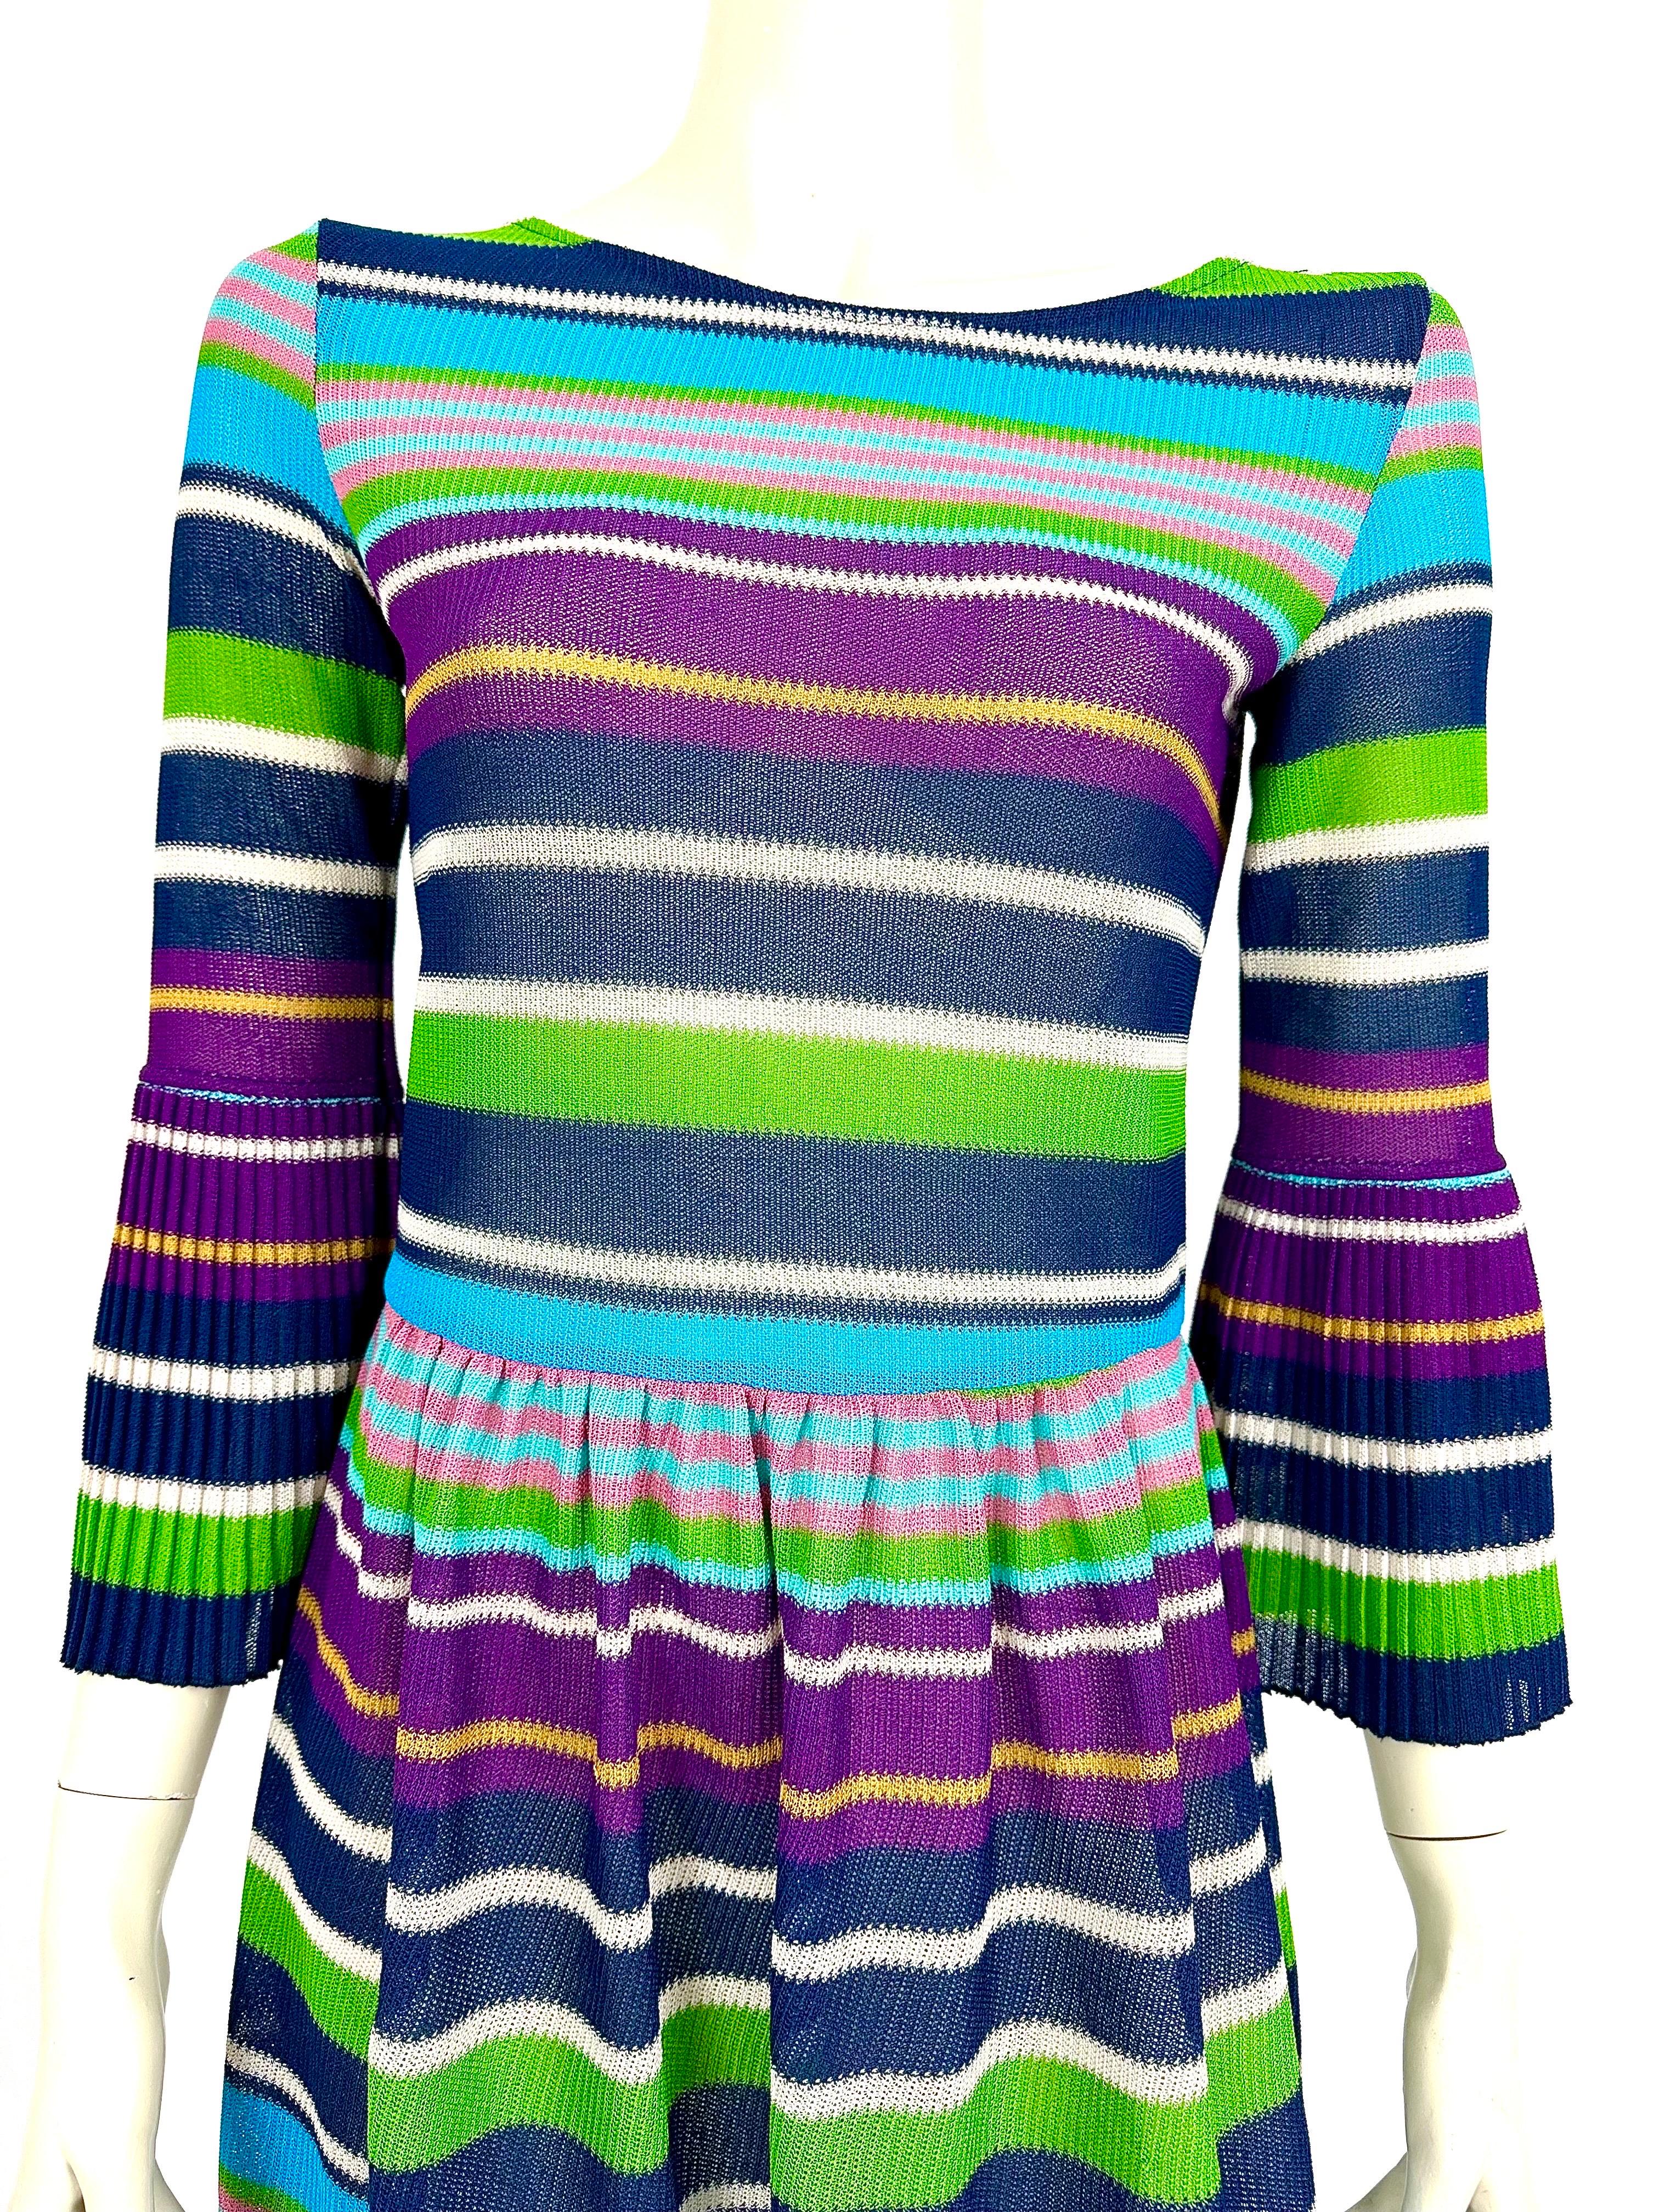 Robe vintage Missoni
tricots des années 1980.
Rayures horizontales multicolores.
Col rond, belles manches plissées sur l'avant-bras.
La jupe est également plissée à la taille.
La robe légèrement transparente n'est pas doublée de tissu.

Les